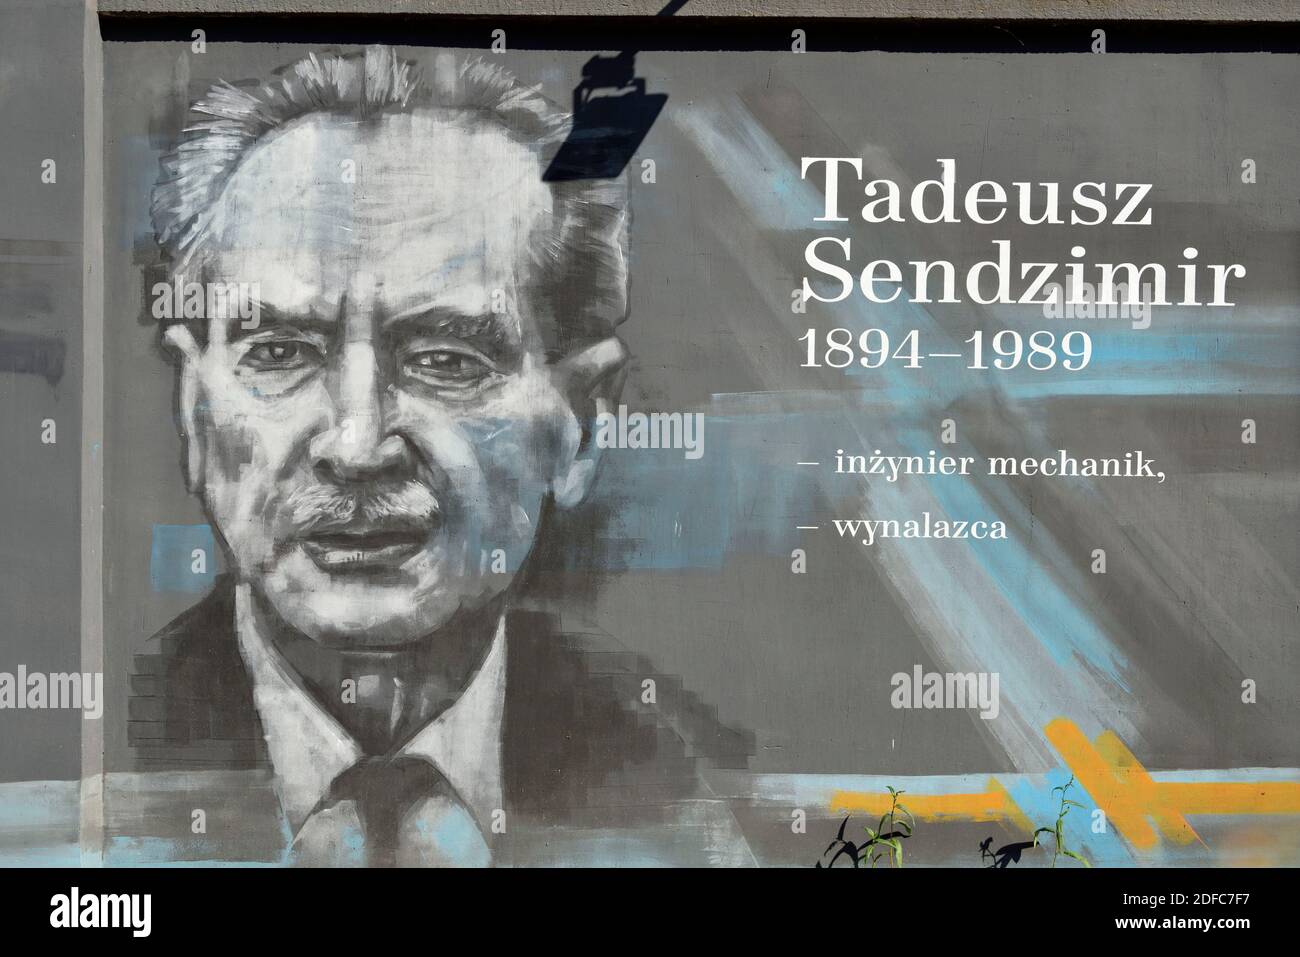 Polonia, Pomerania Occidental, Szczecin, Zygmunta Chmielewskiego Street, famosos murales de la personalidad polaca, aquí Tadeusz Sendzimir Foto de stock